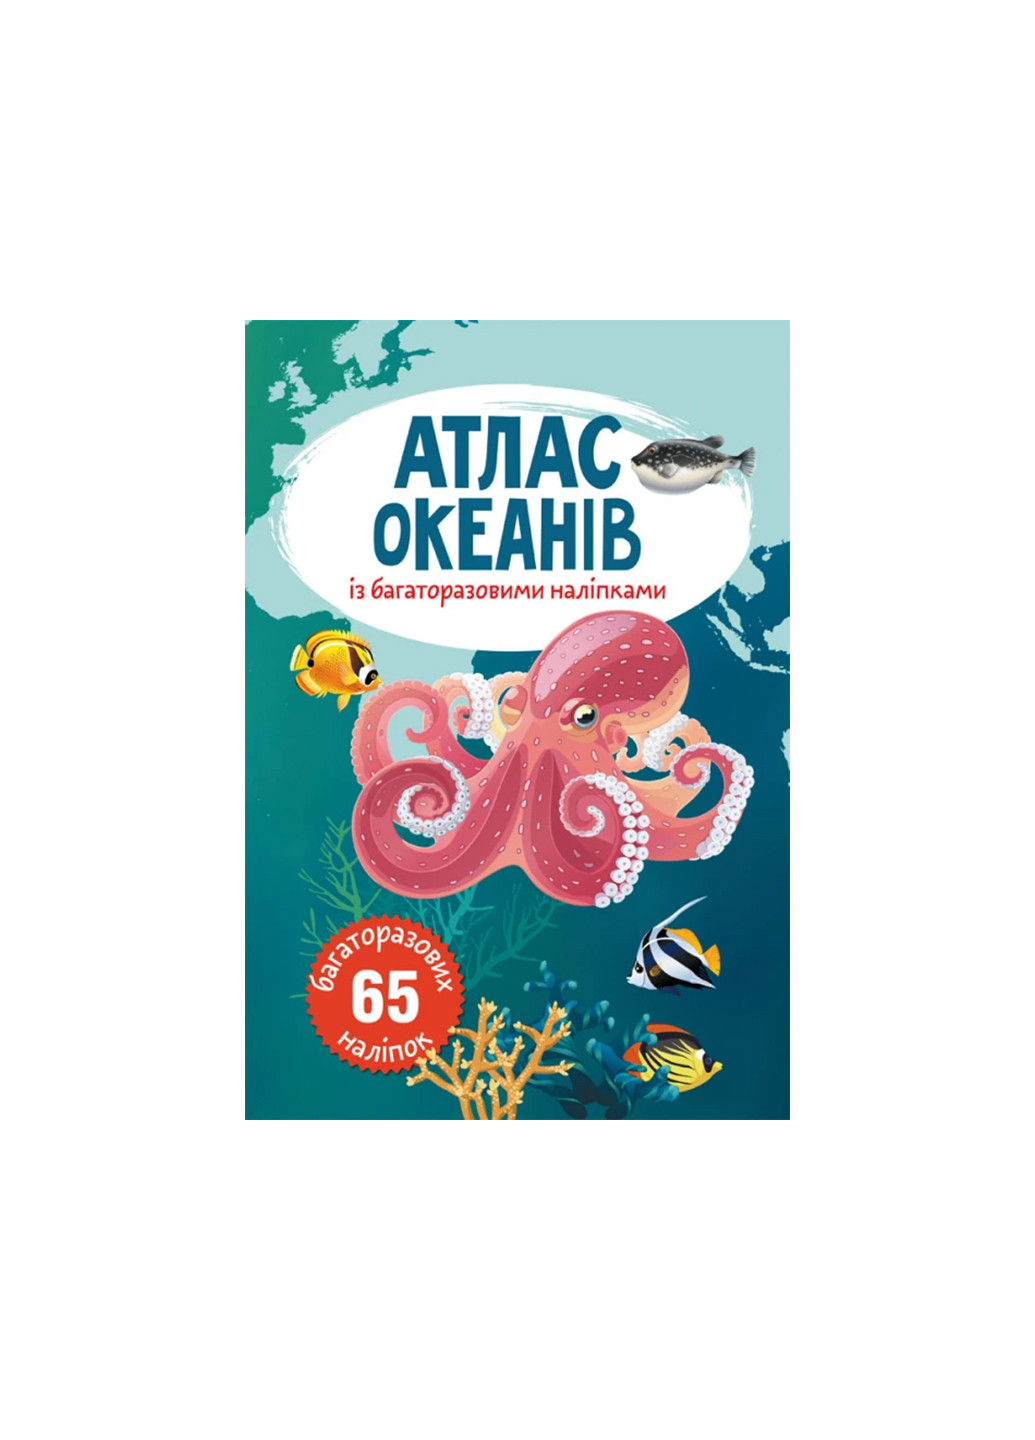 Книга Атлас океанов с многократными наклейками 513 Crystal Book (257077601)